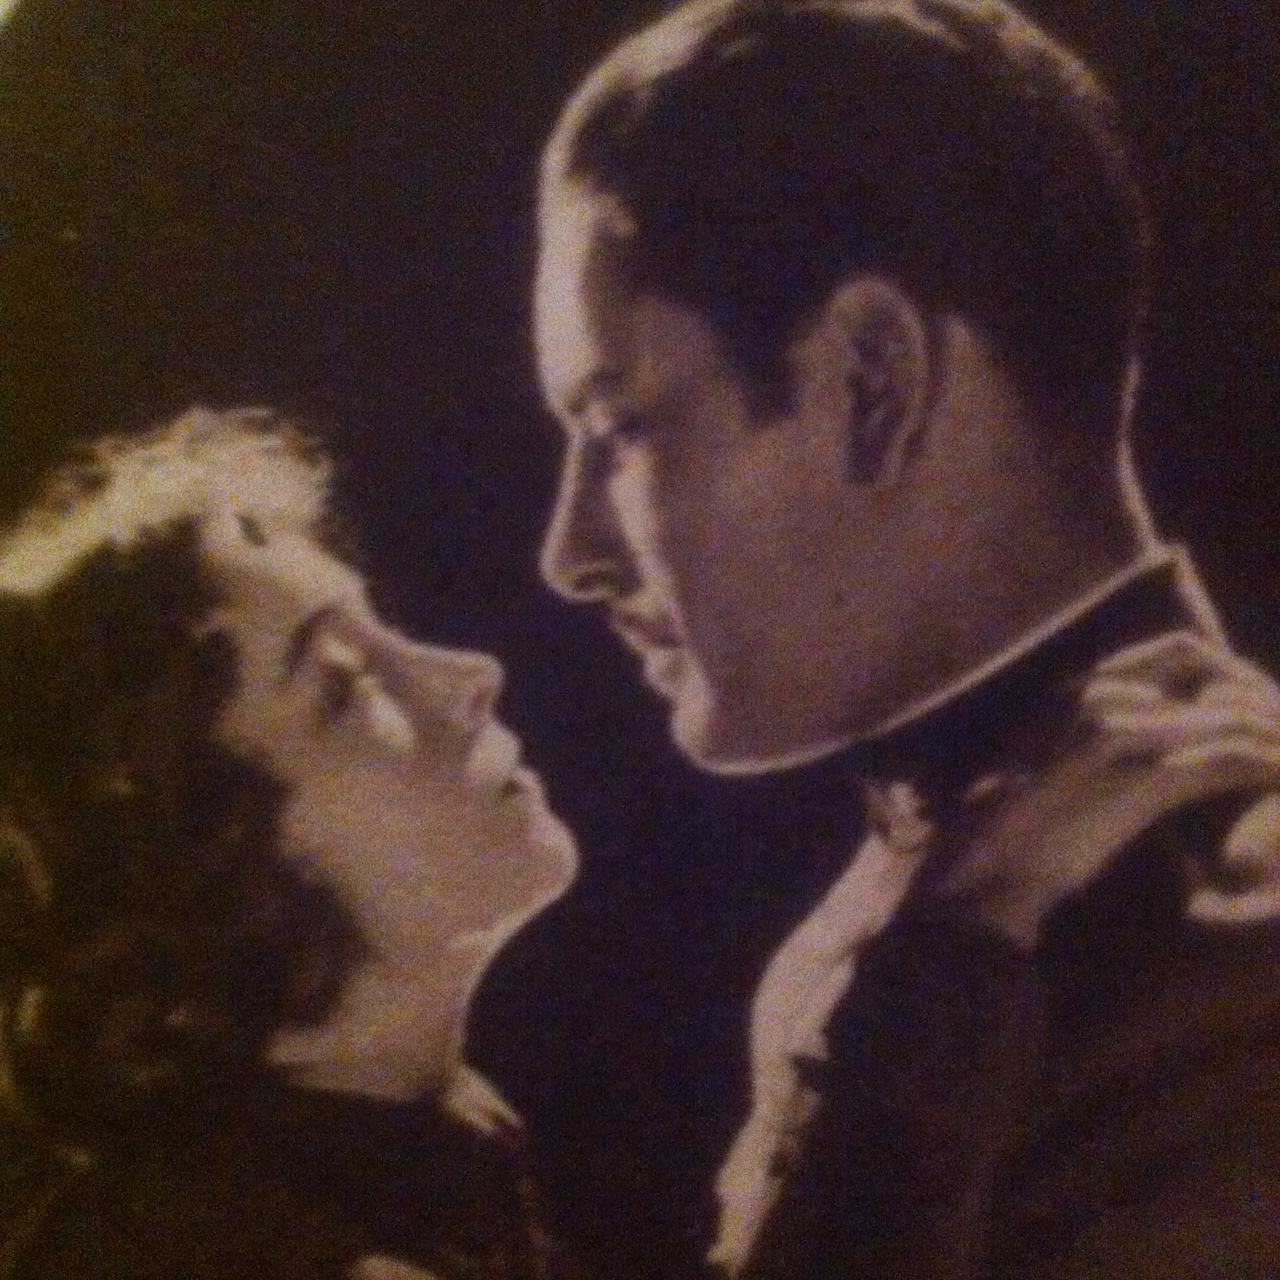  فیلم سینمایی The White Sister با حضور Lillian Gish و Ronald Colman